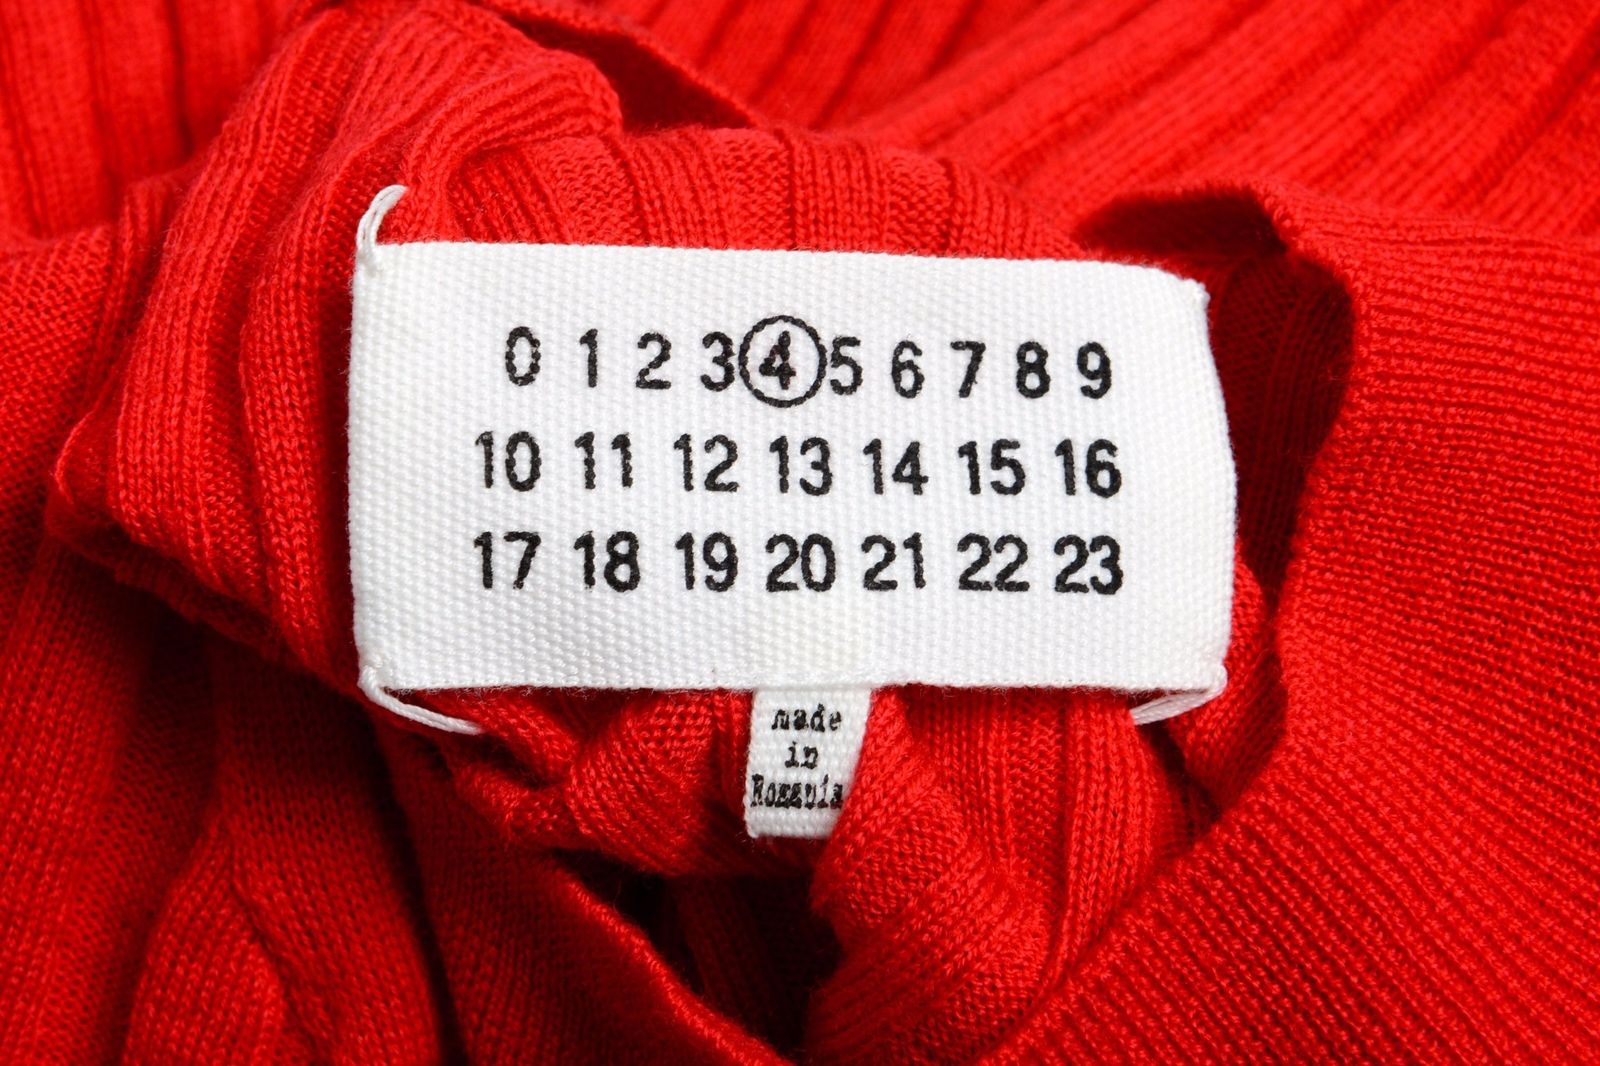 ONE MODA: Maison Margiela 4 100% Wool Red Turtleneck Women's Sweater ...